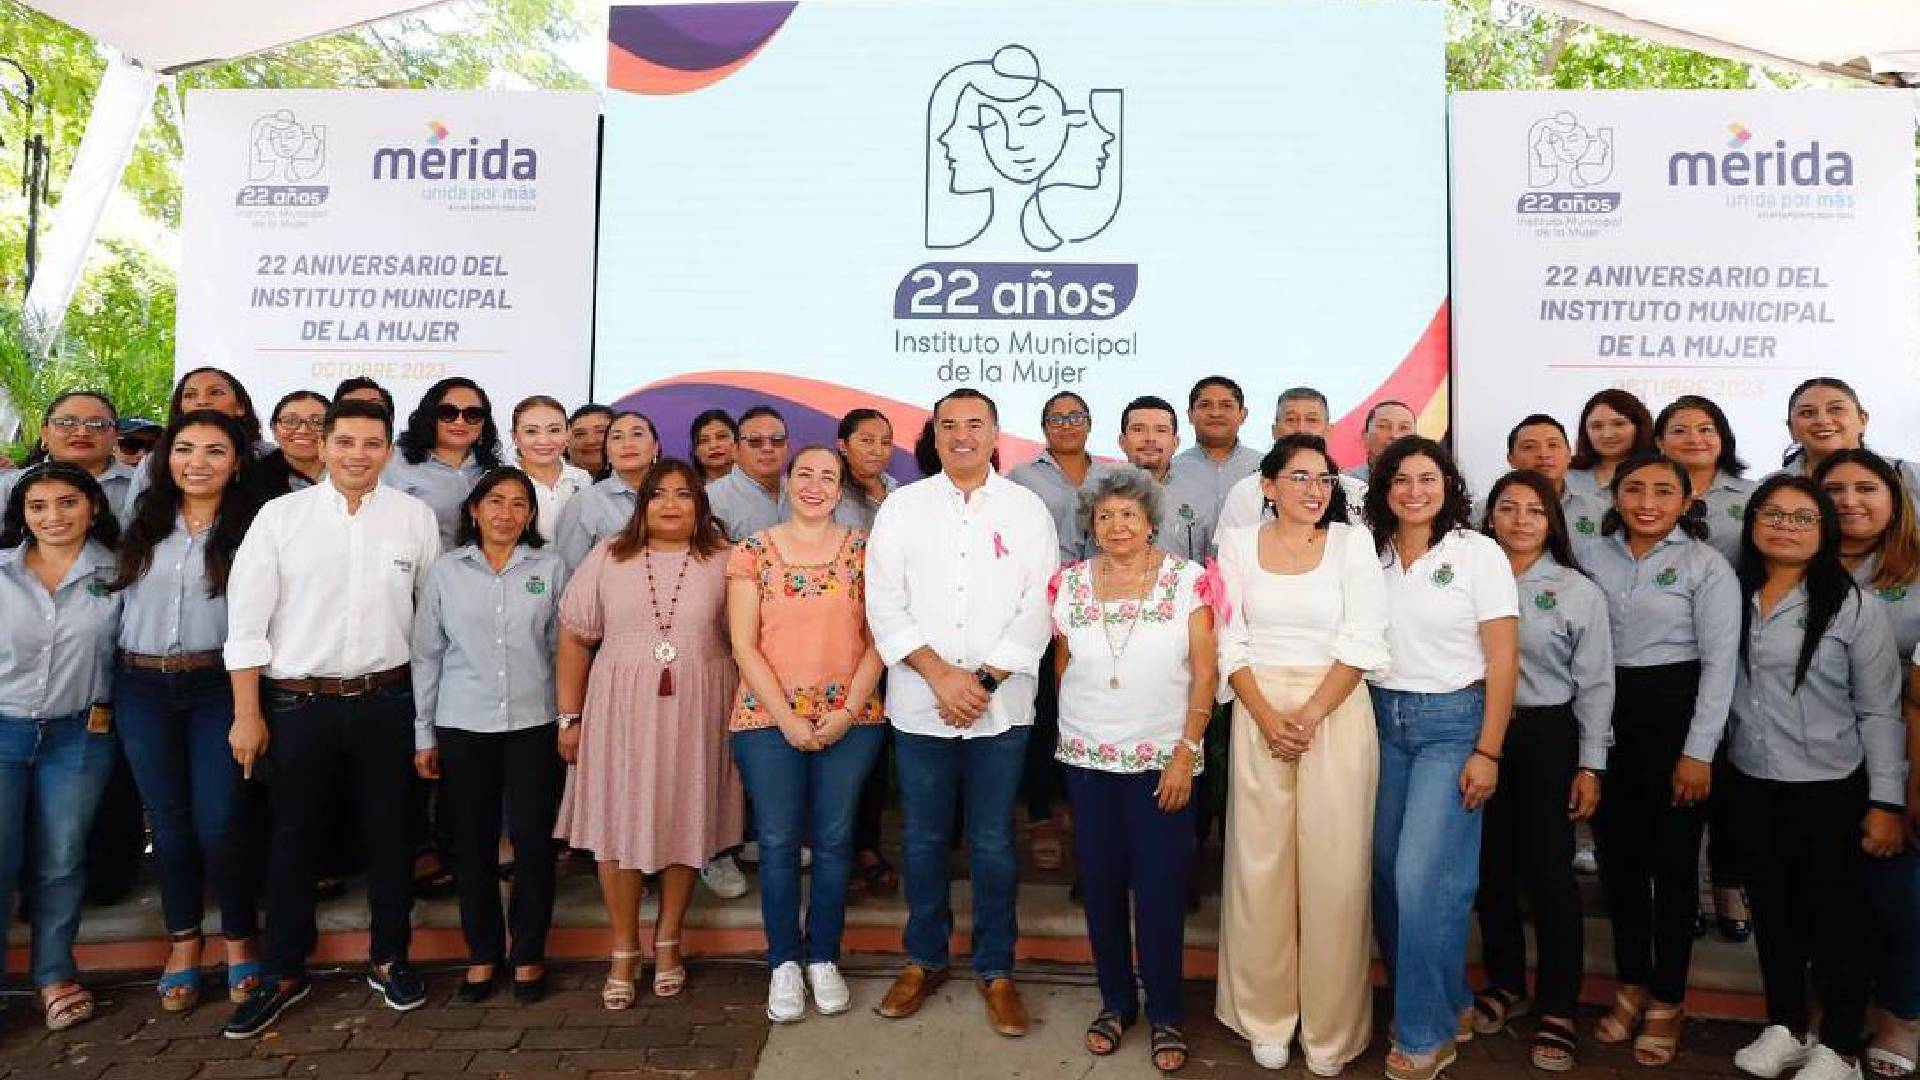 Aniversario del Instituto Municipal de la Mujer: 22 años transformando la vida de miles de mujeres en Mérida